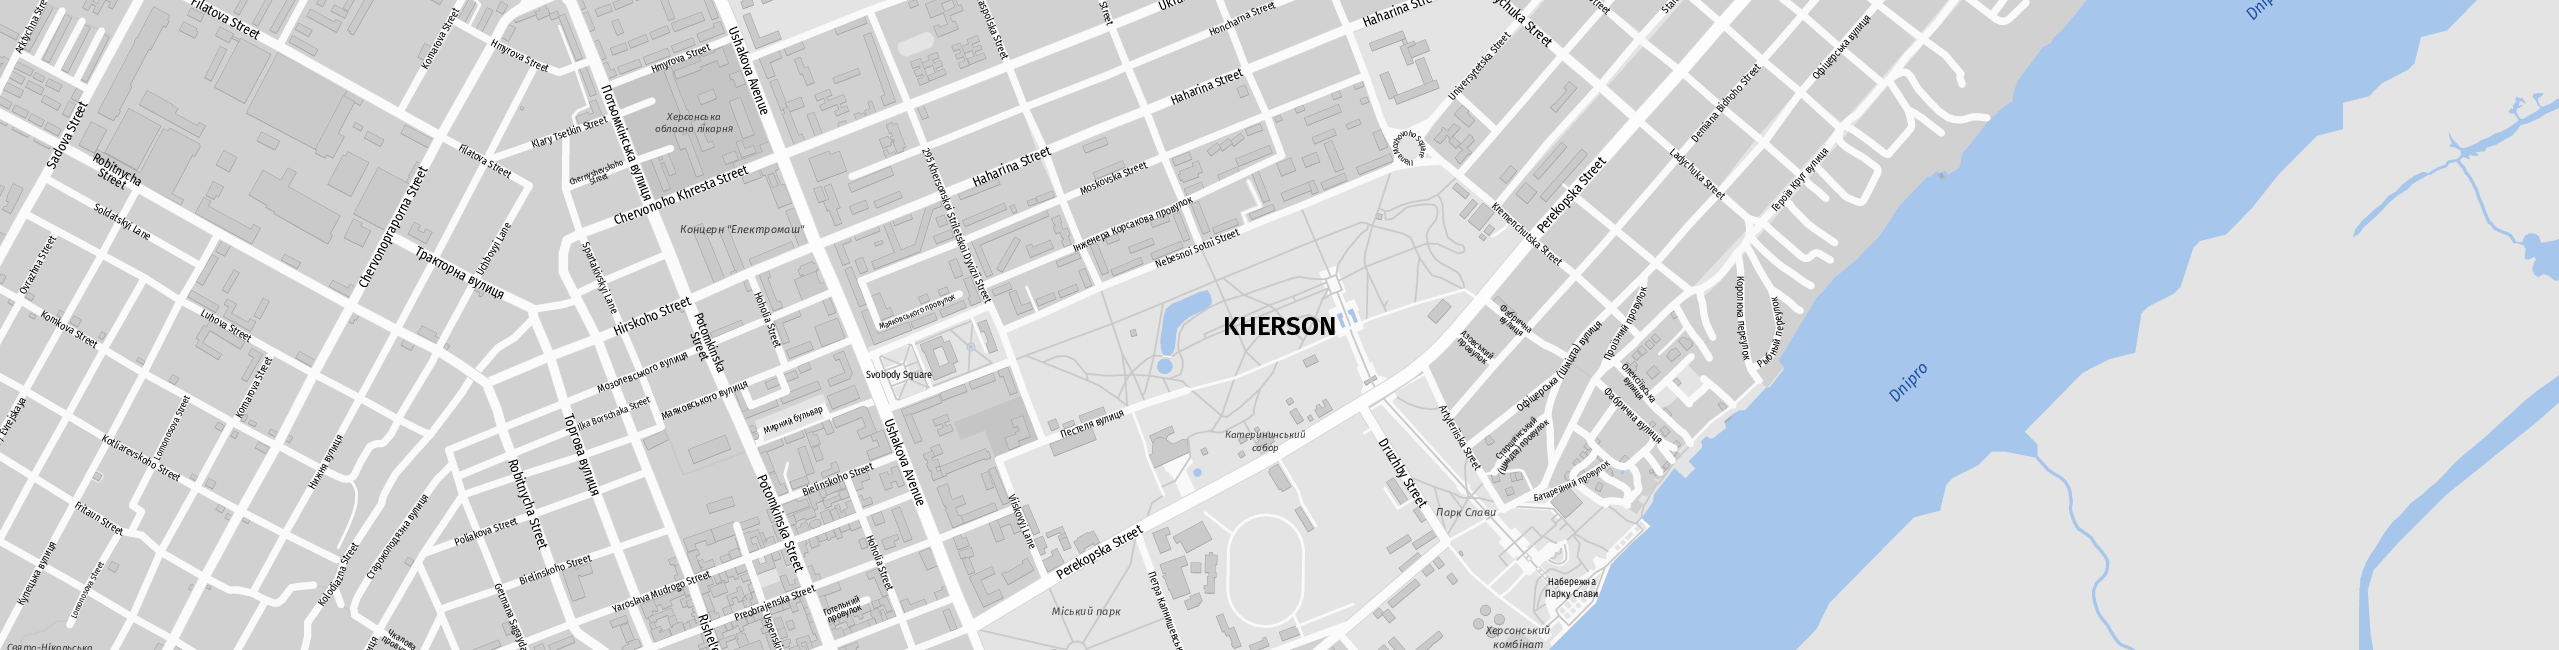 Stadtplan Cherson zum Downloaden.